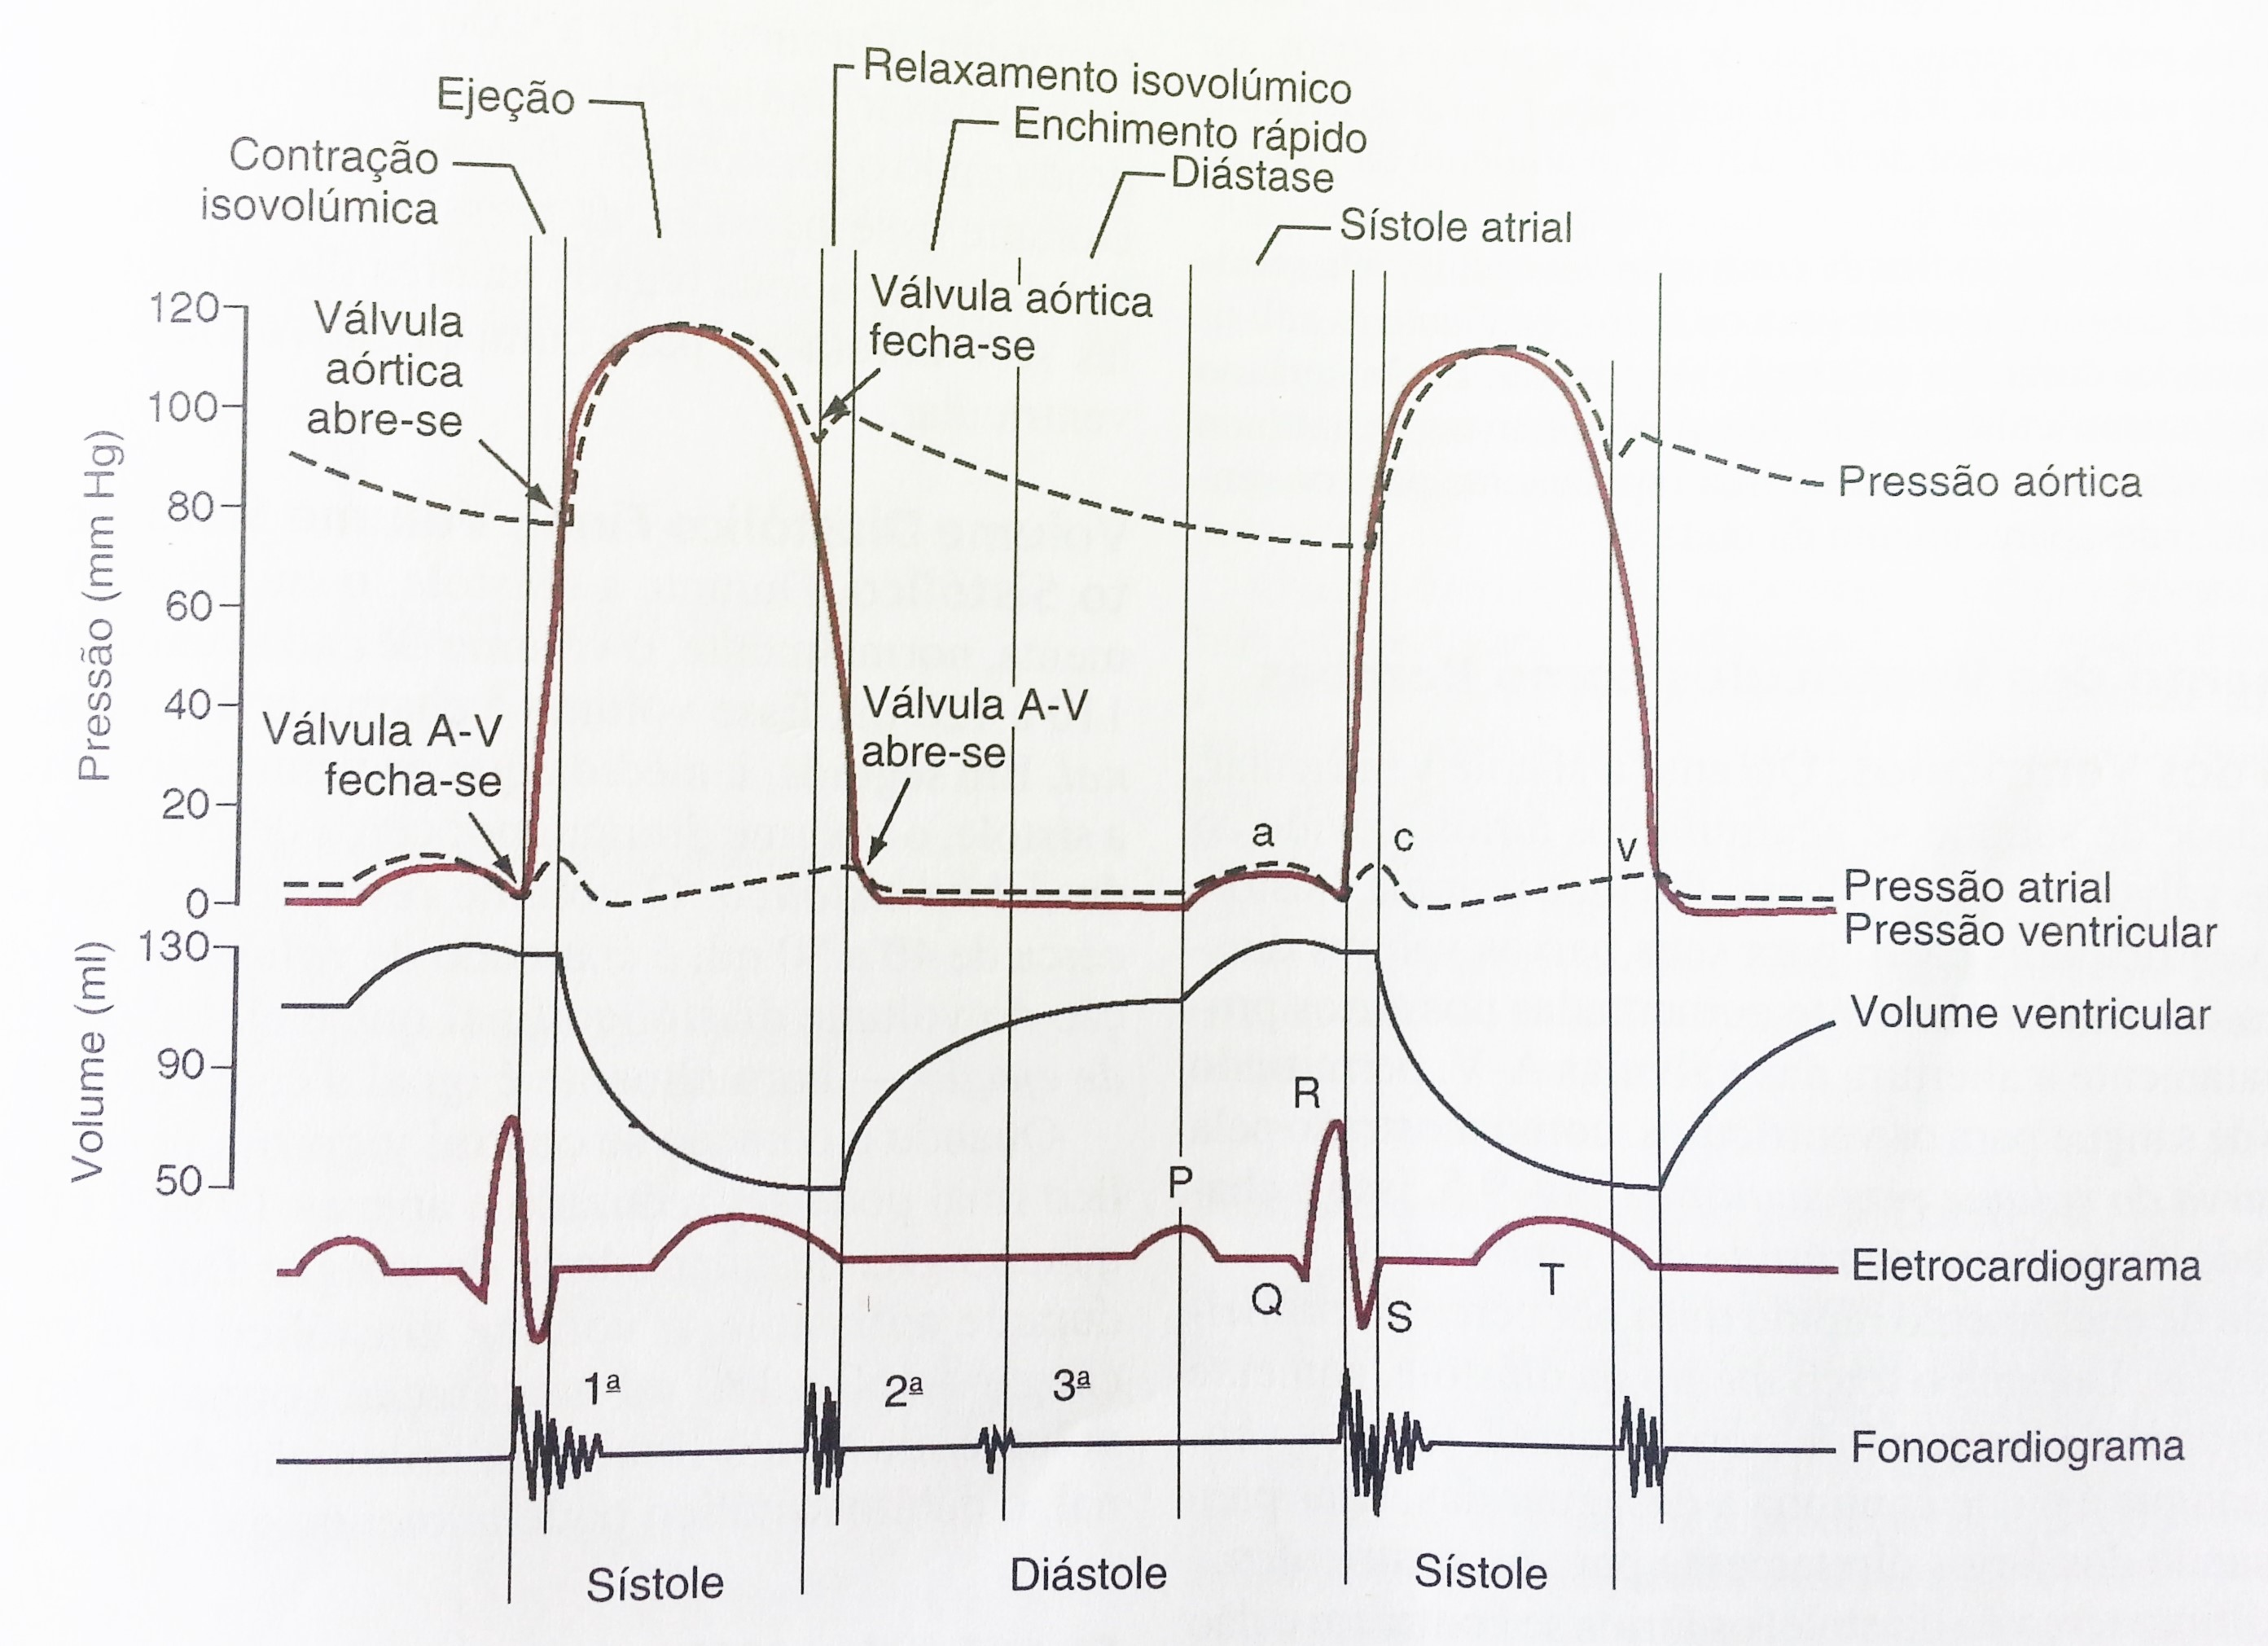 23 aórtica, pressão atrial, pressão ventricular, volume ventricular do lado esquerdo do coração, além do eletrocardiograma e fonocardiograma (GUYTON; HALL, 2002).